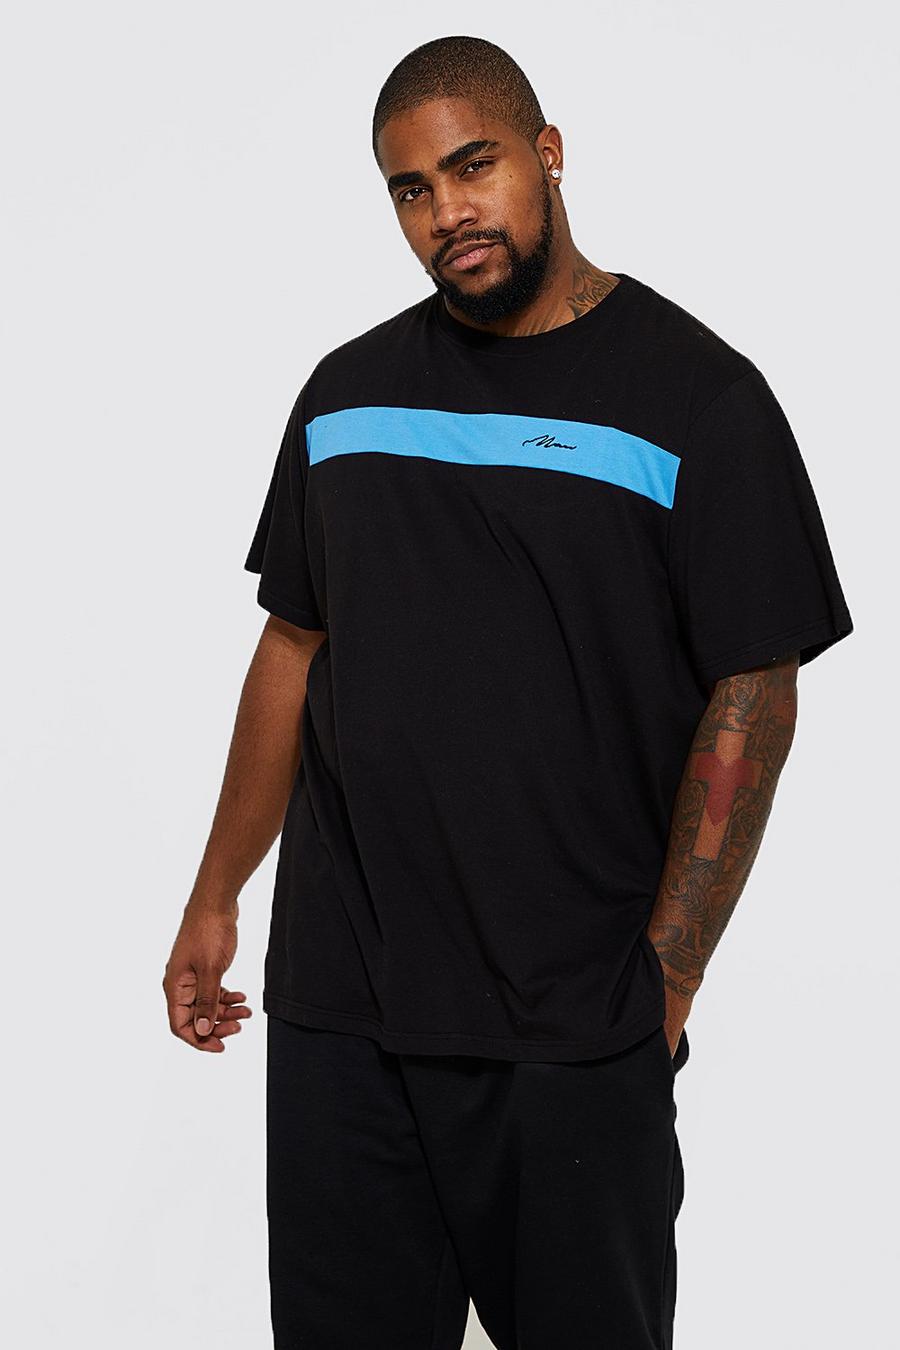 T-shirt Plus Size a blocchi di colore con firma Man, Black nero